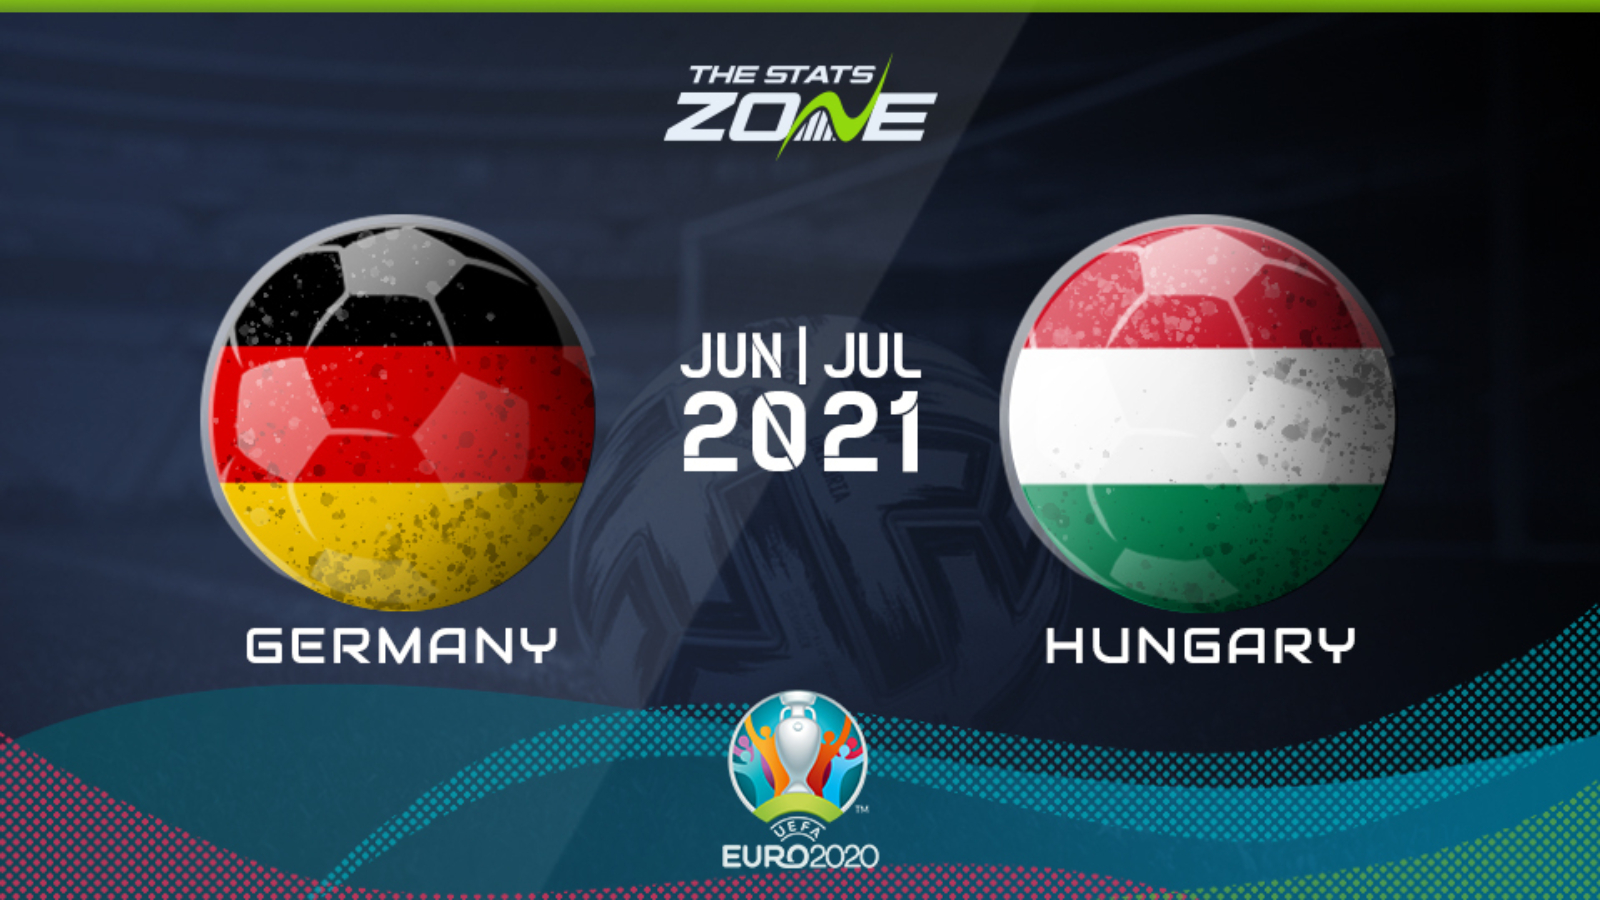 Germany vs hungary euro 2020